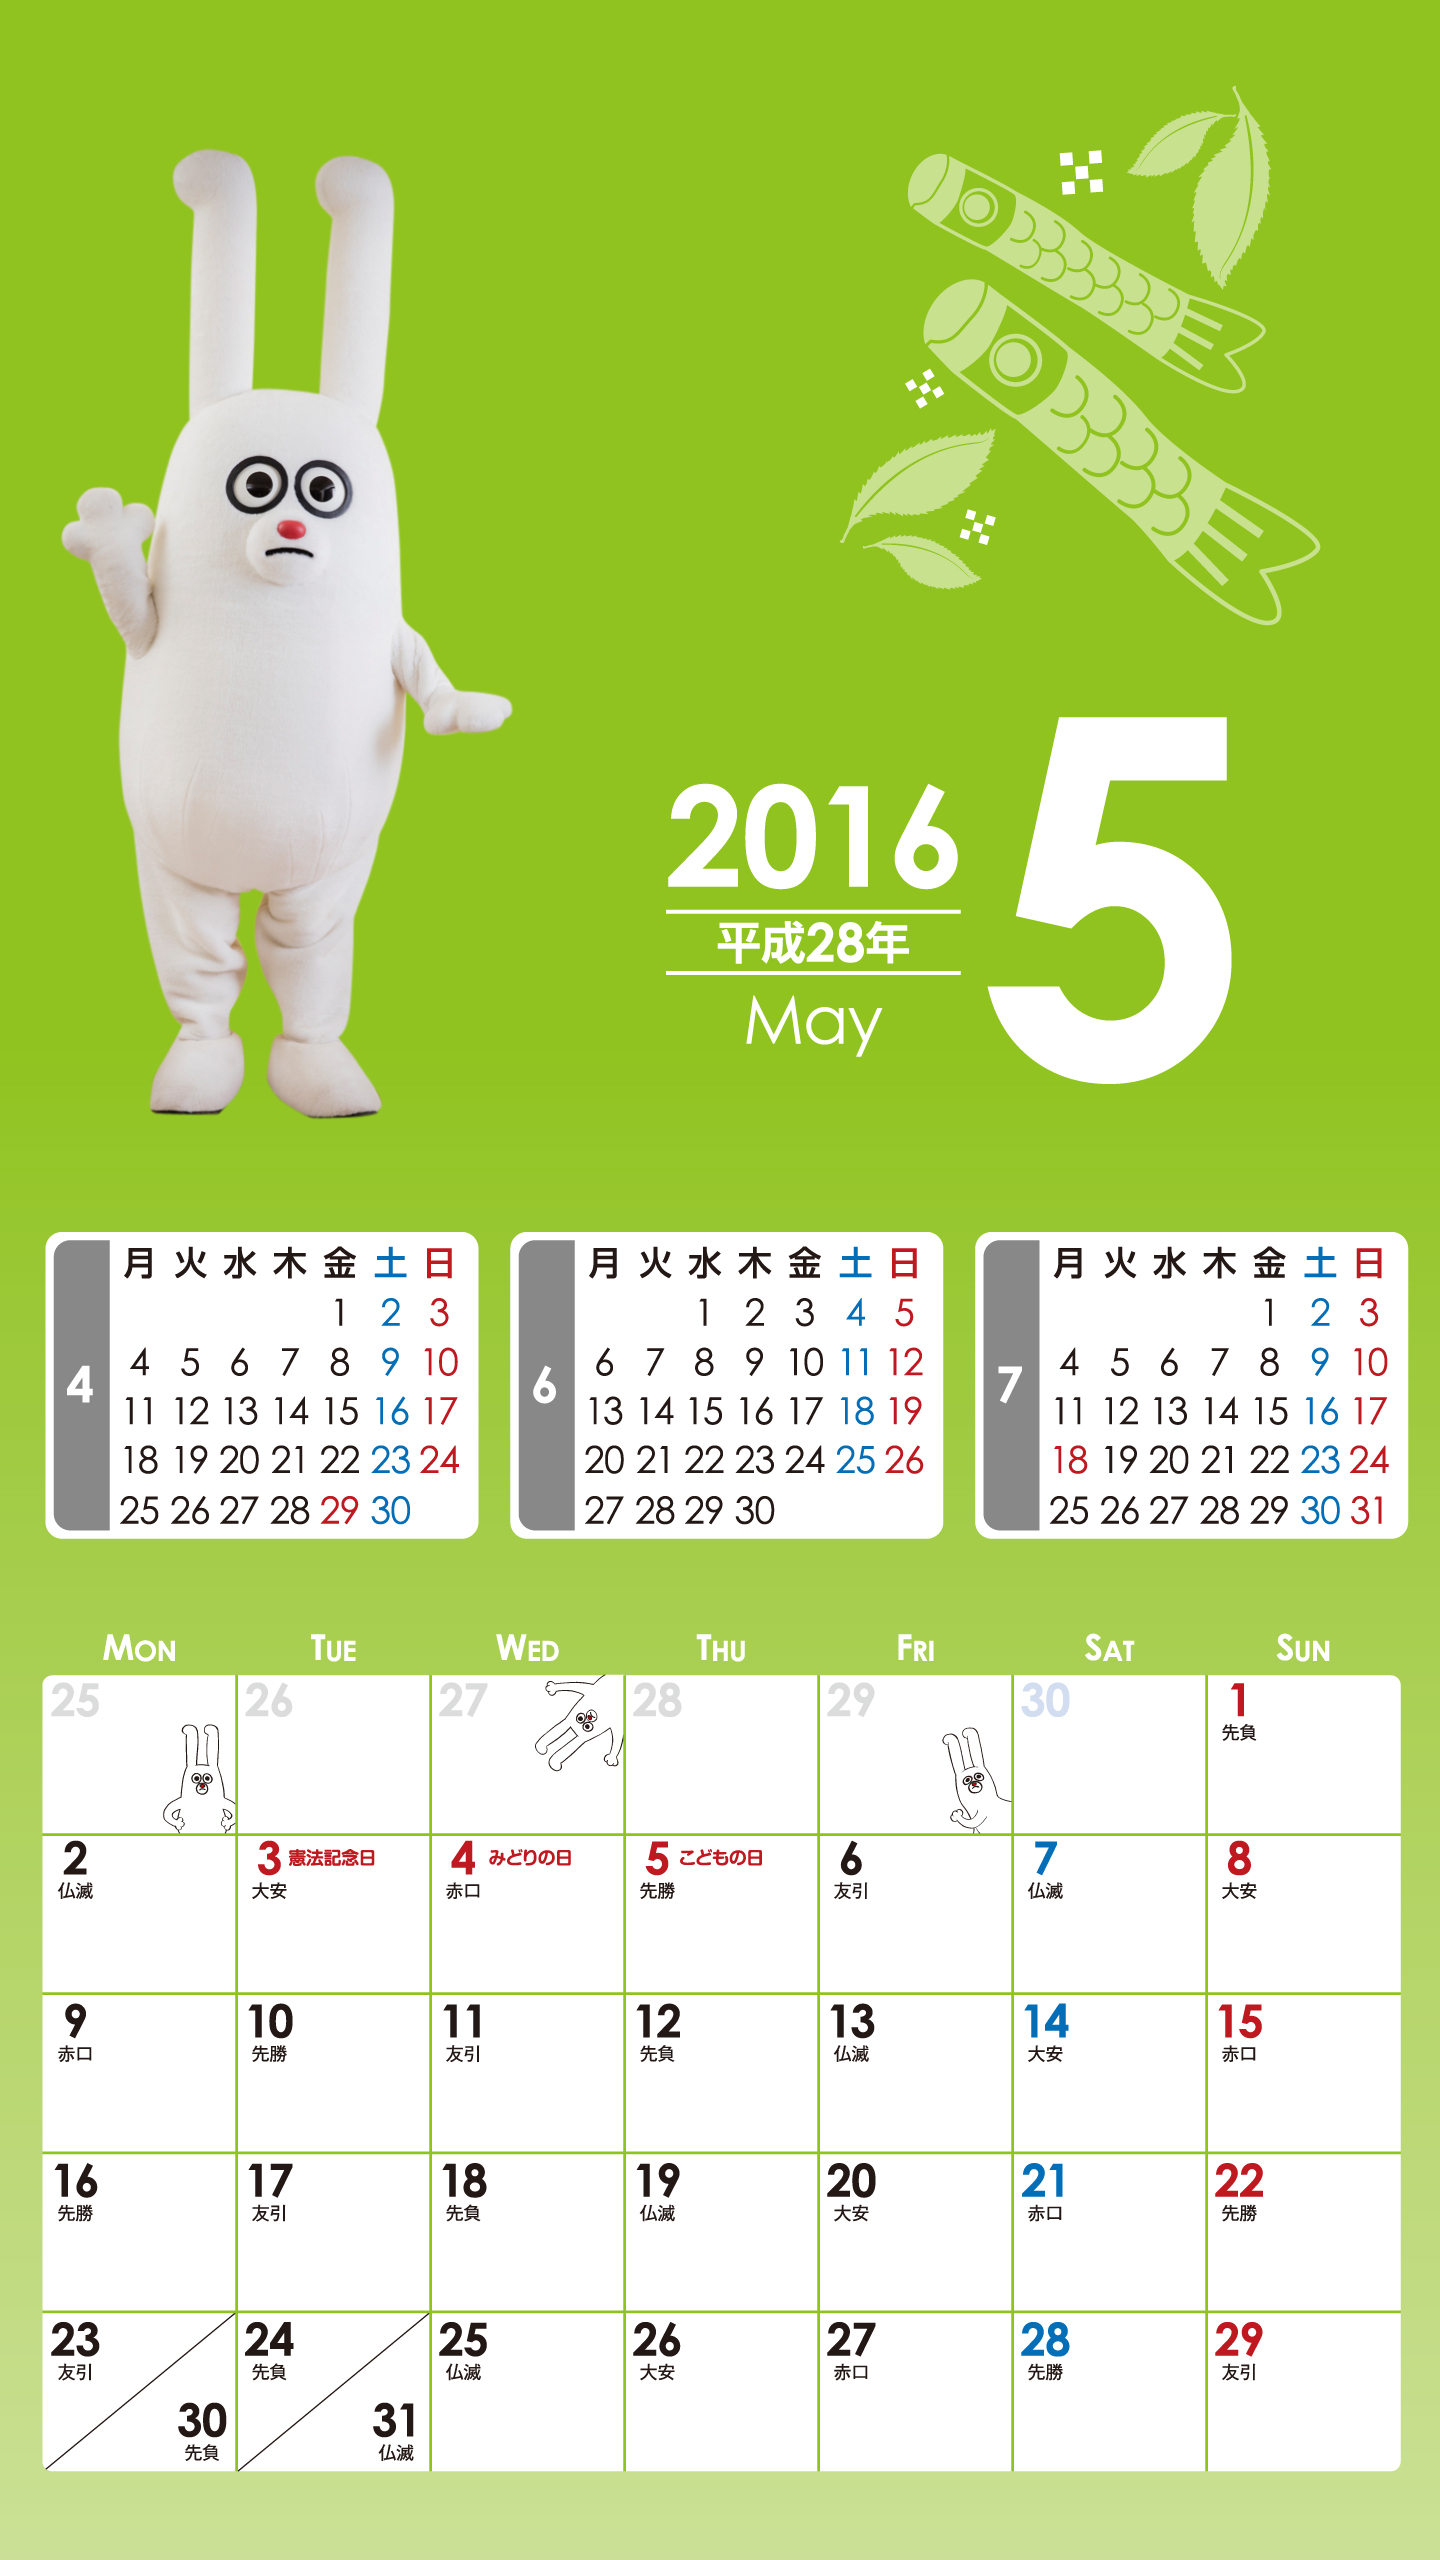 デジタルカレンダー2016年05月 Bs11 イレブン いつでも無料放送